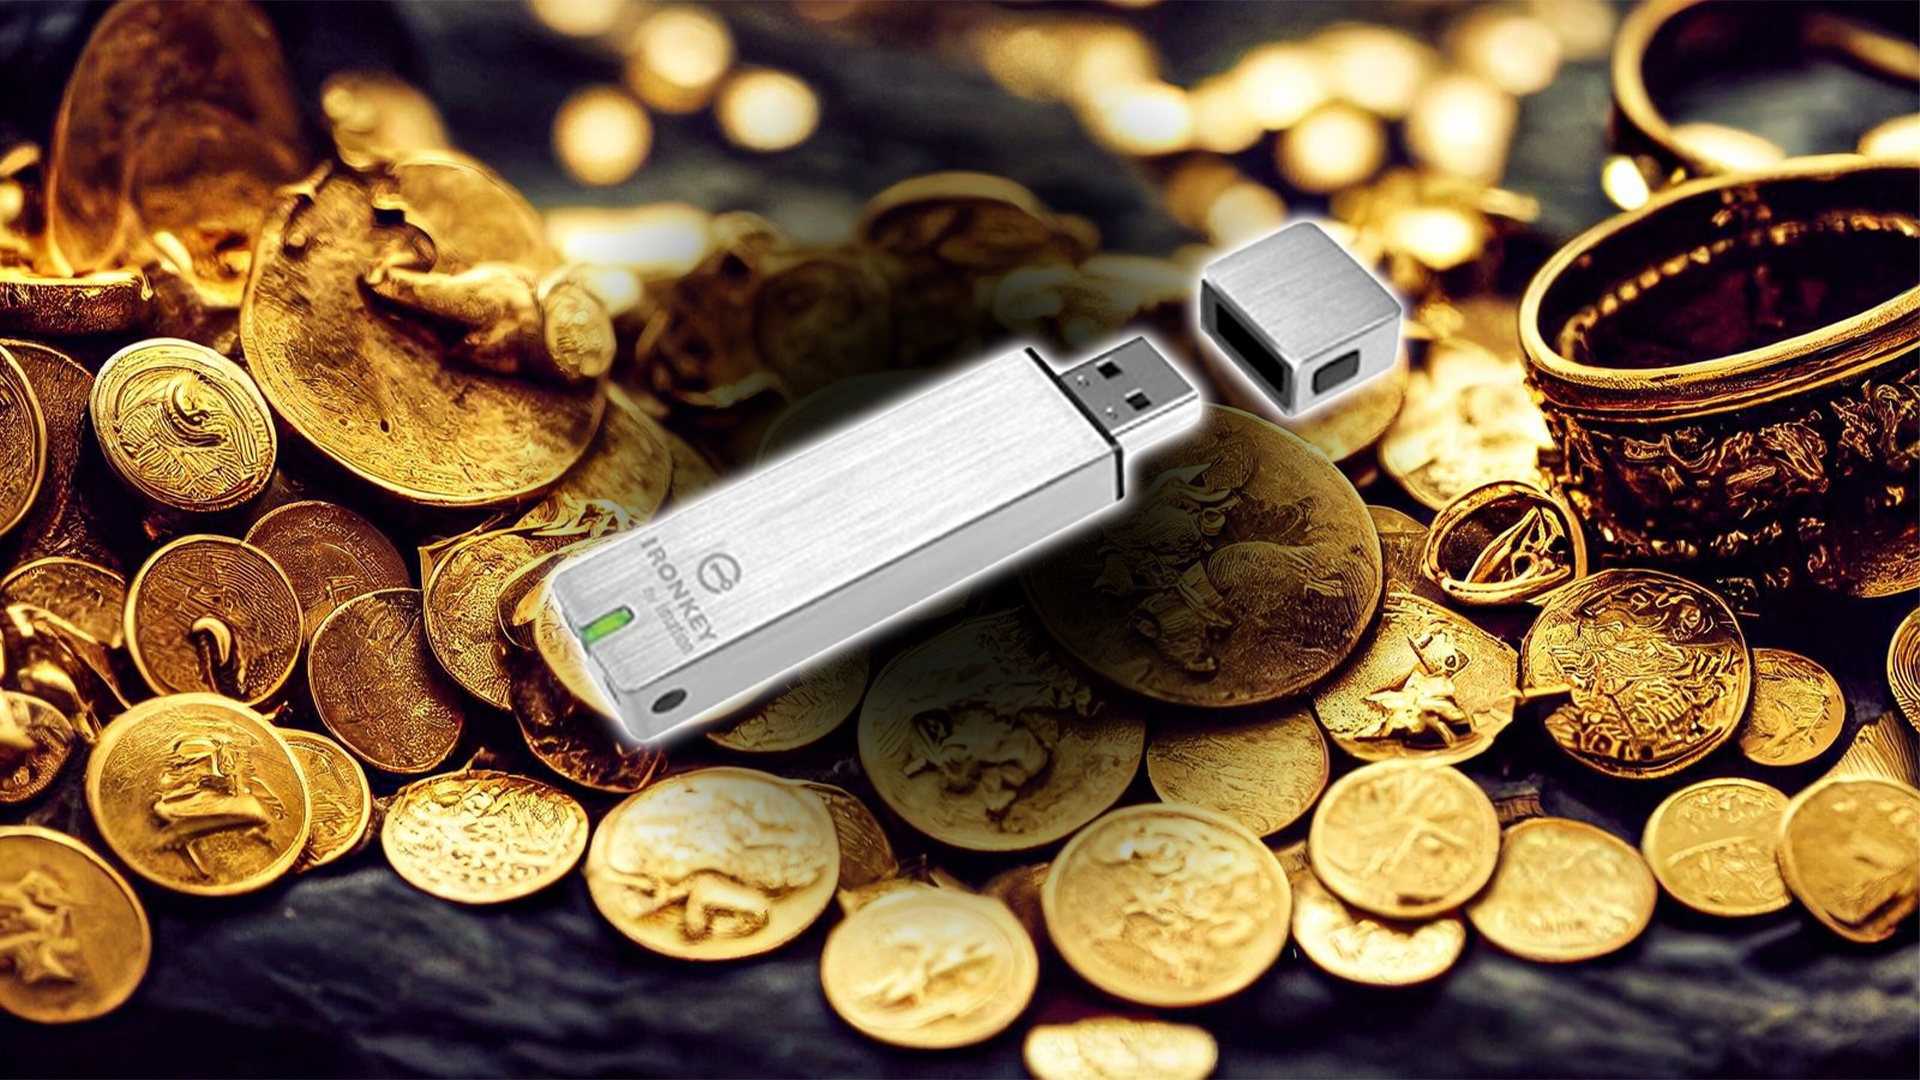 #»Nur 200 Billionen Versuche« – USB-Stick mit 226 Millionen Euro geknackt, doch der Besitzer will das Geld (noch) nicht